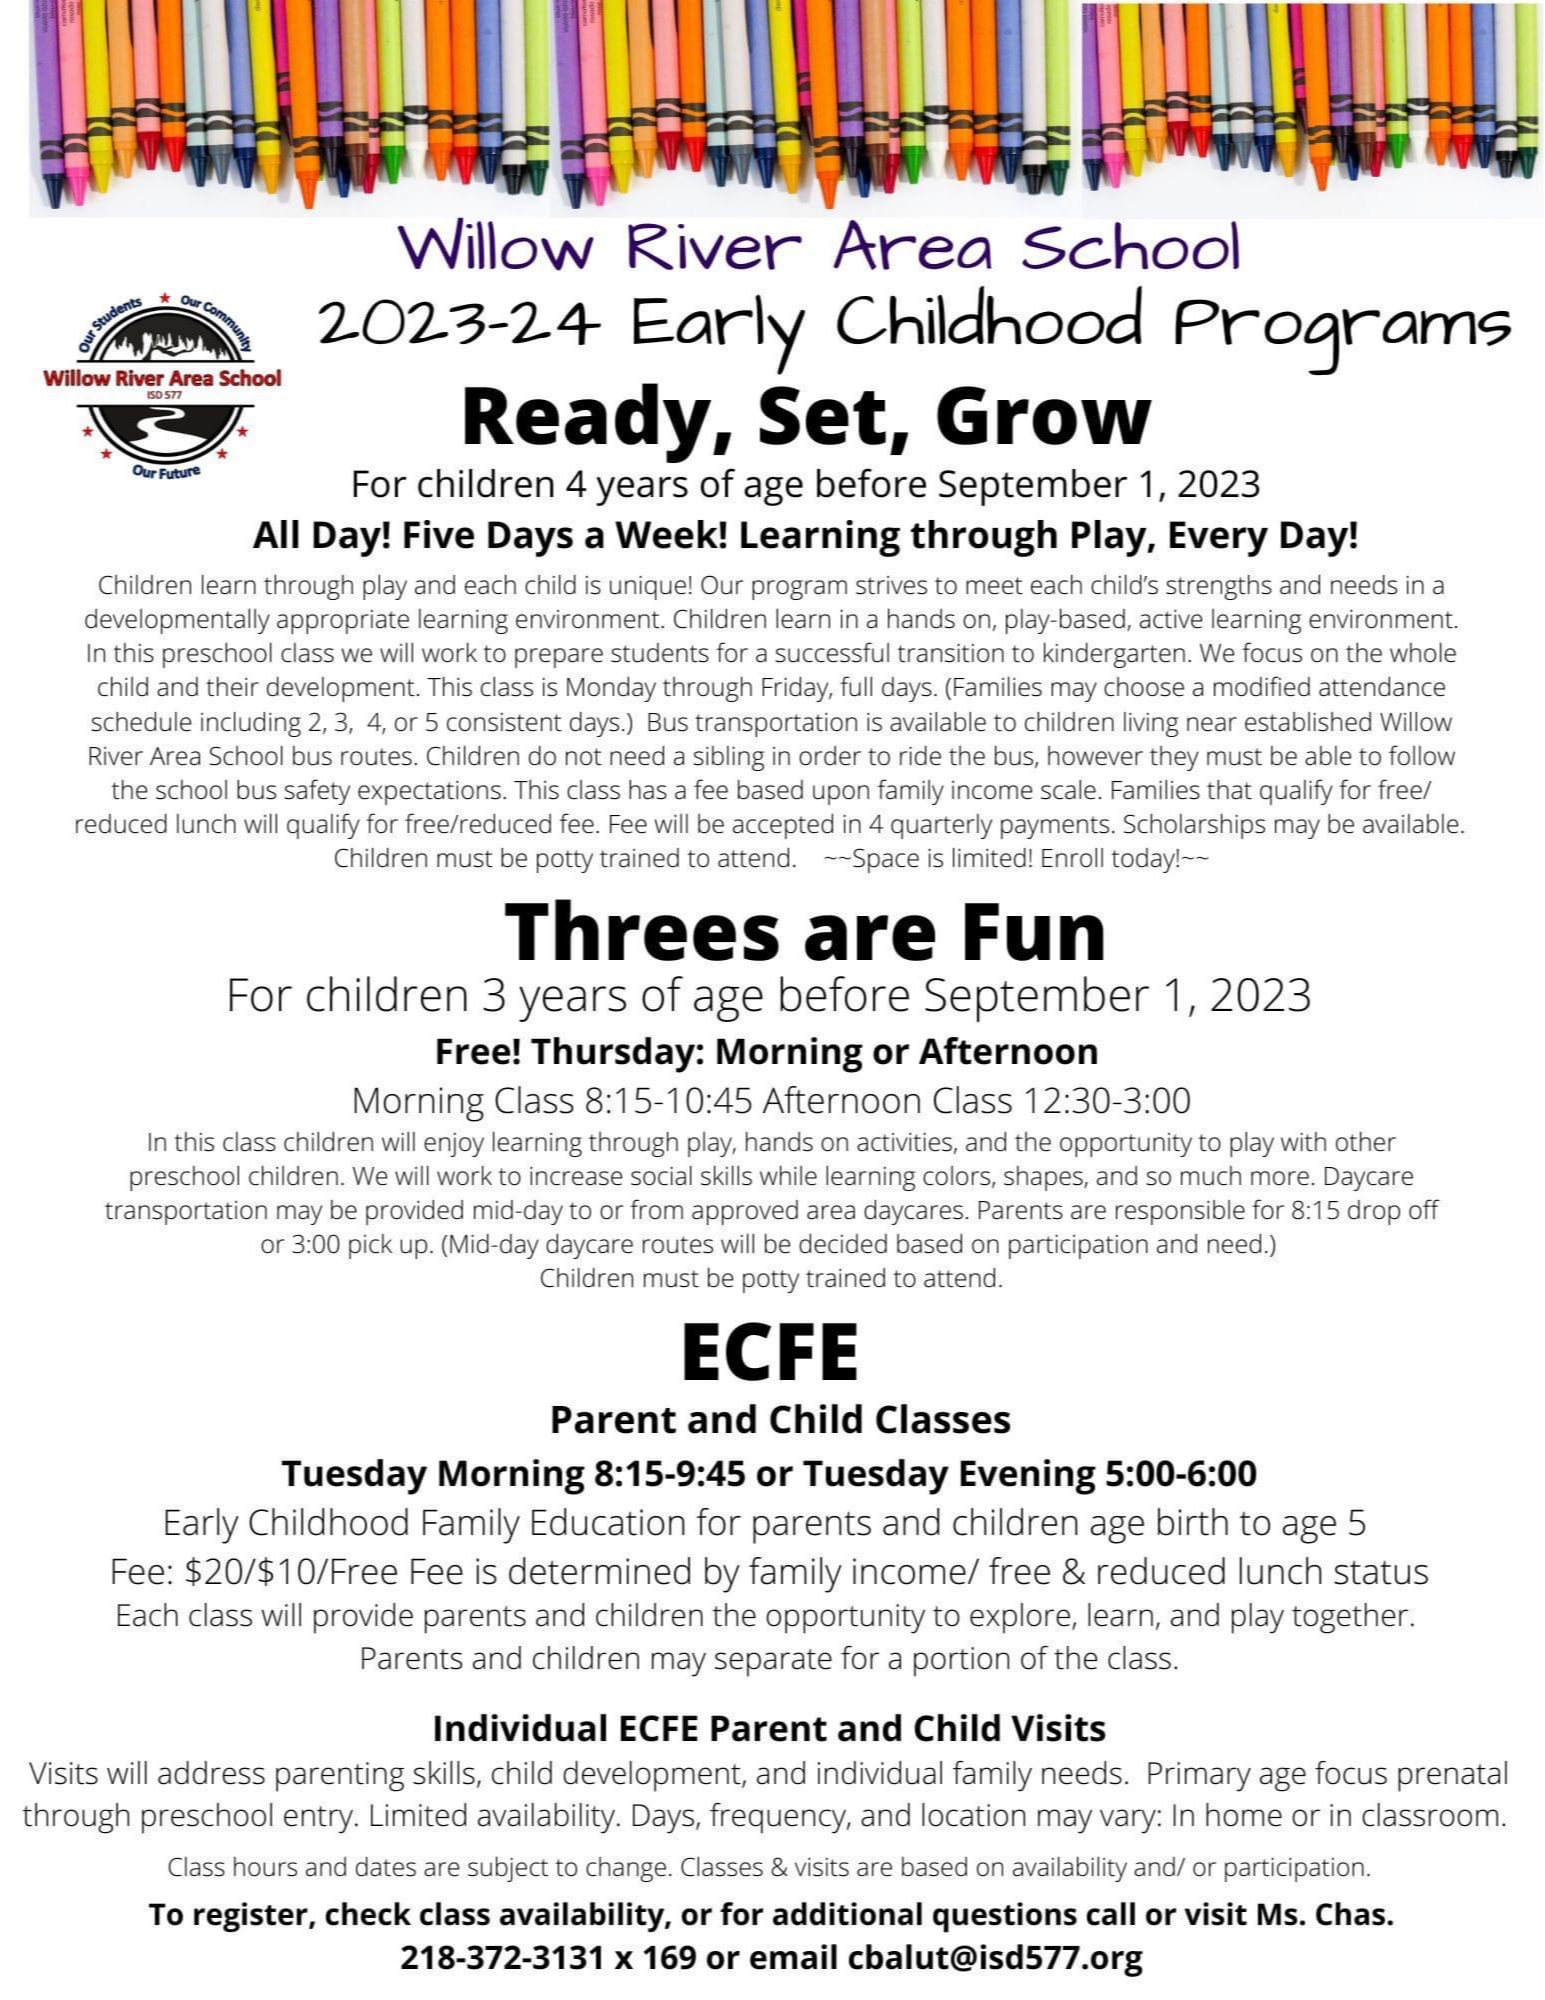 23/24 Early Childhood Programs